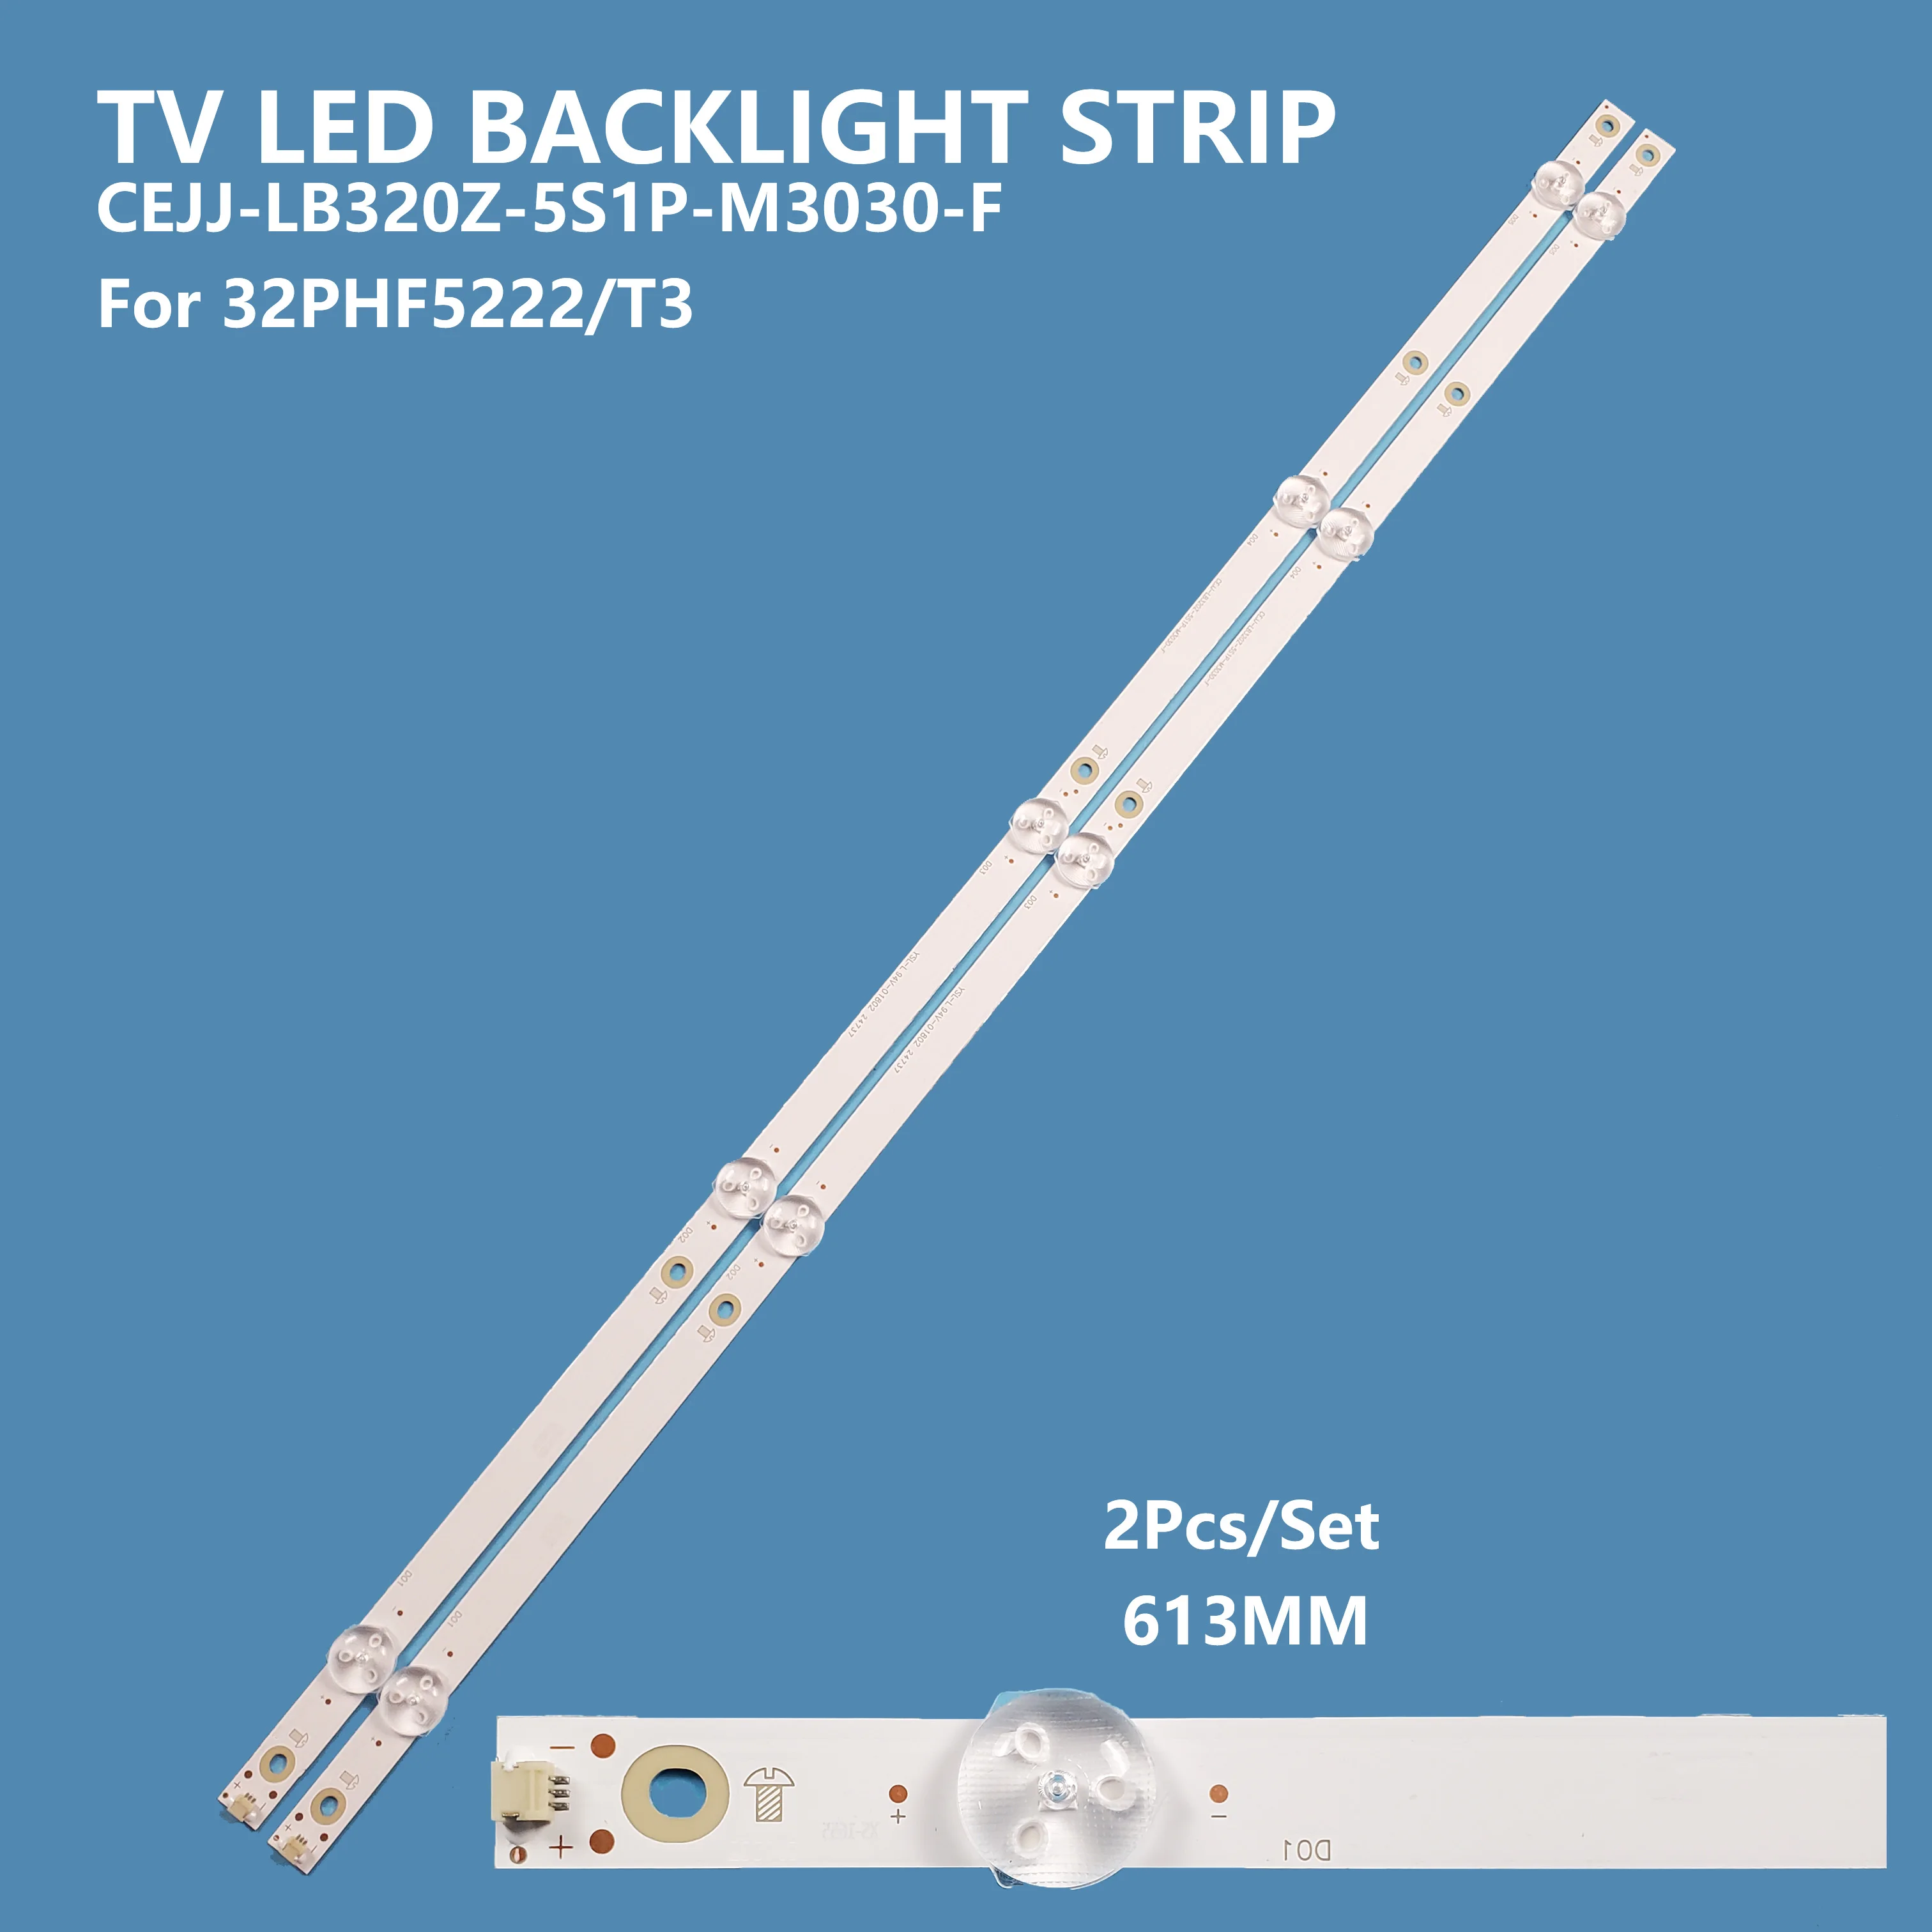 2PCS/set New Arrival TV Led Backlight Strip CEJJ-LB320Z-5S1P-M3030-F For PHILIPS 32inch 32PHF5222/T3 tv Bar Light Accessories 2pcs set tv backlight strips lights hs 018 d3200601 3030as for haier 32inch tv led tv strip light lcd backlight